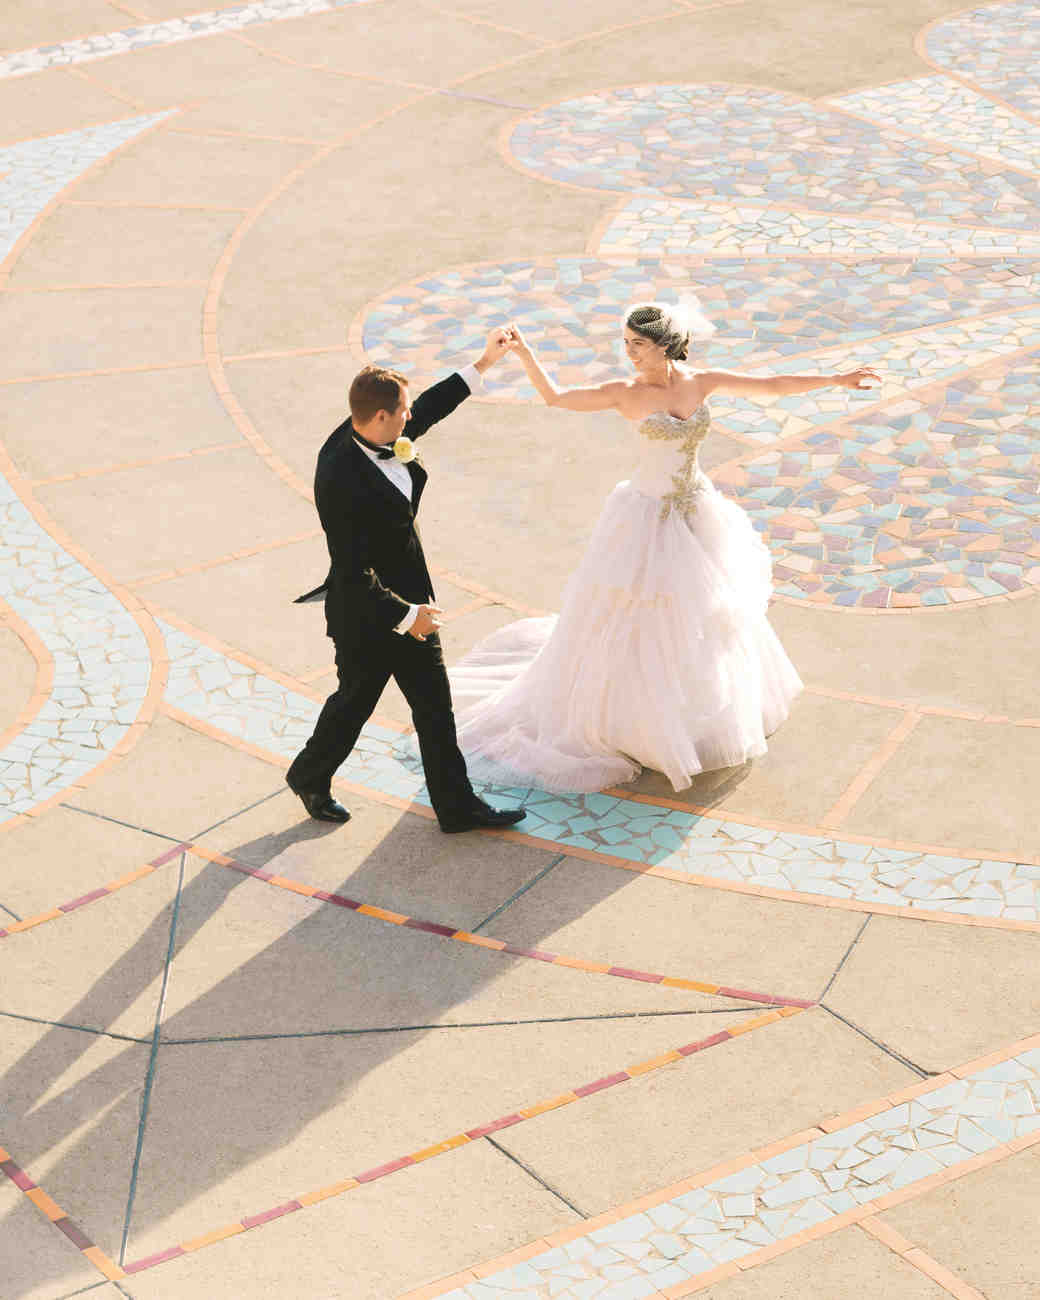 Positano Wedding Featured In Martha Stewart Weddings Magazine